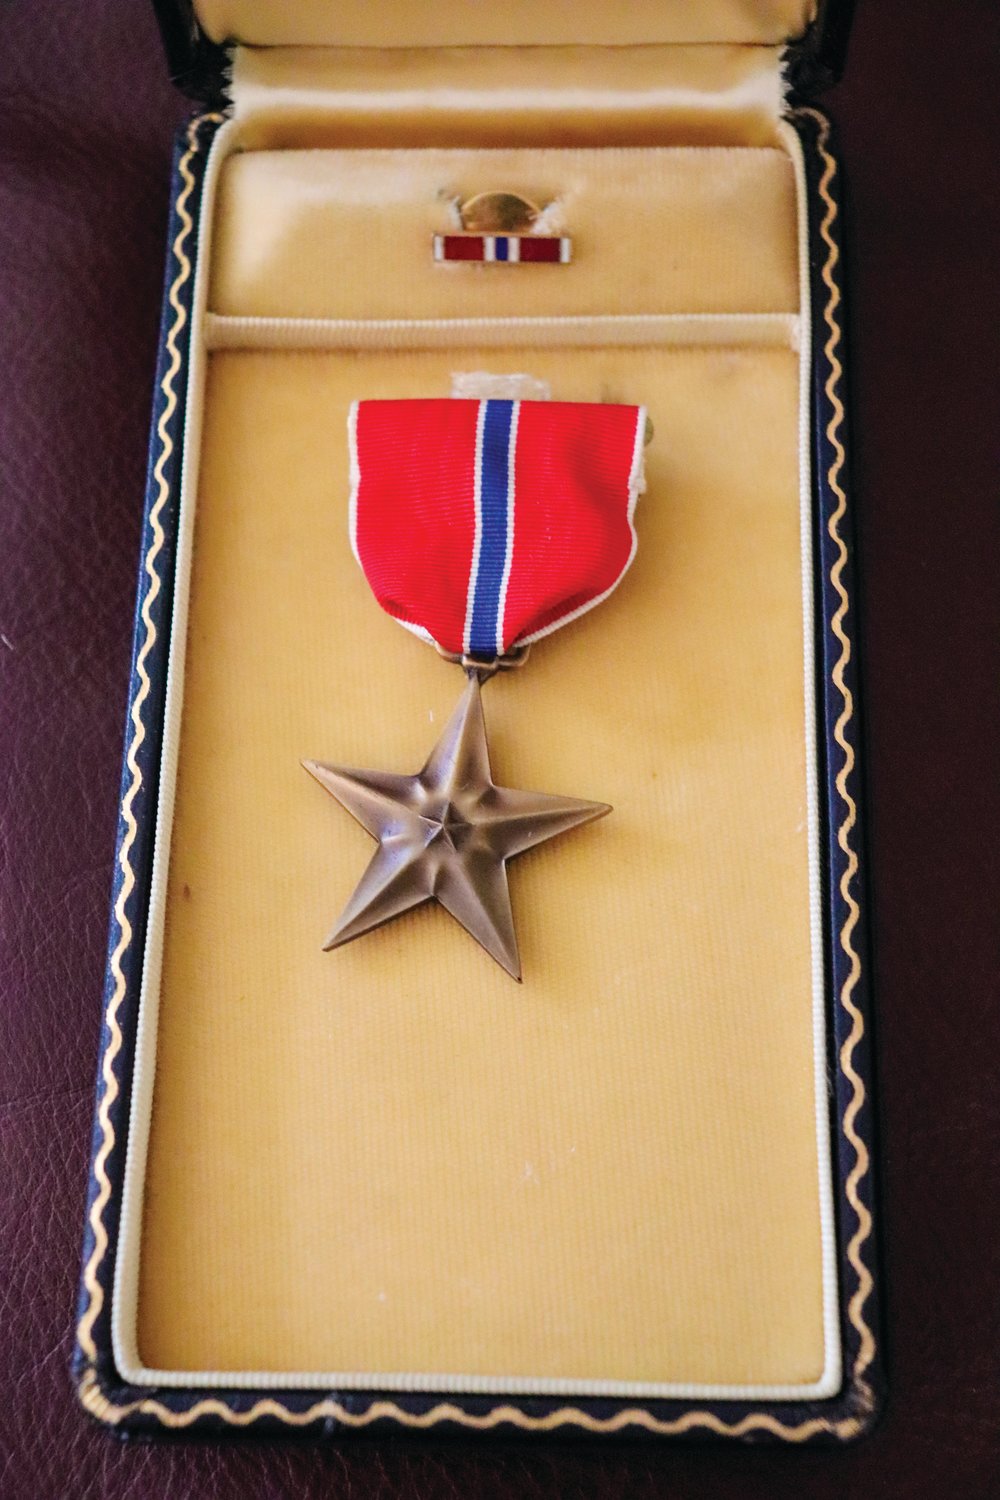 Hart's Bronze Star medal.